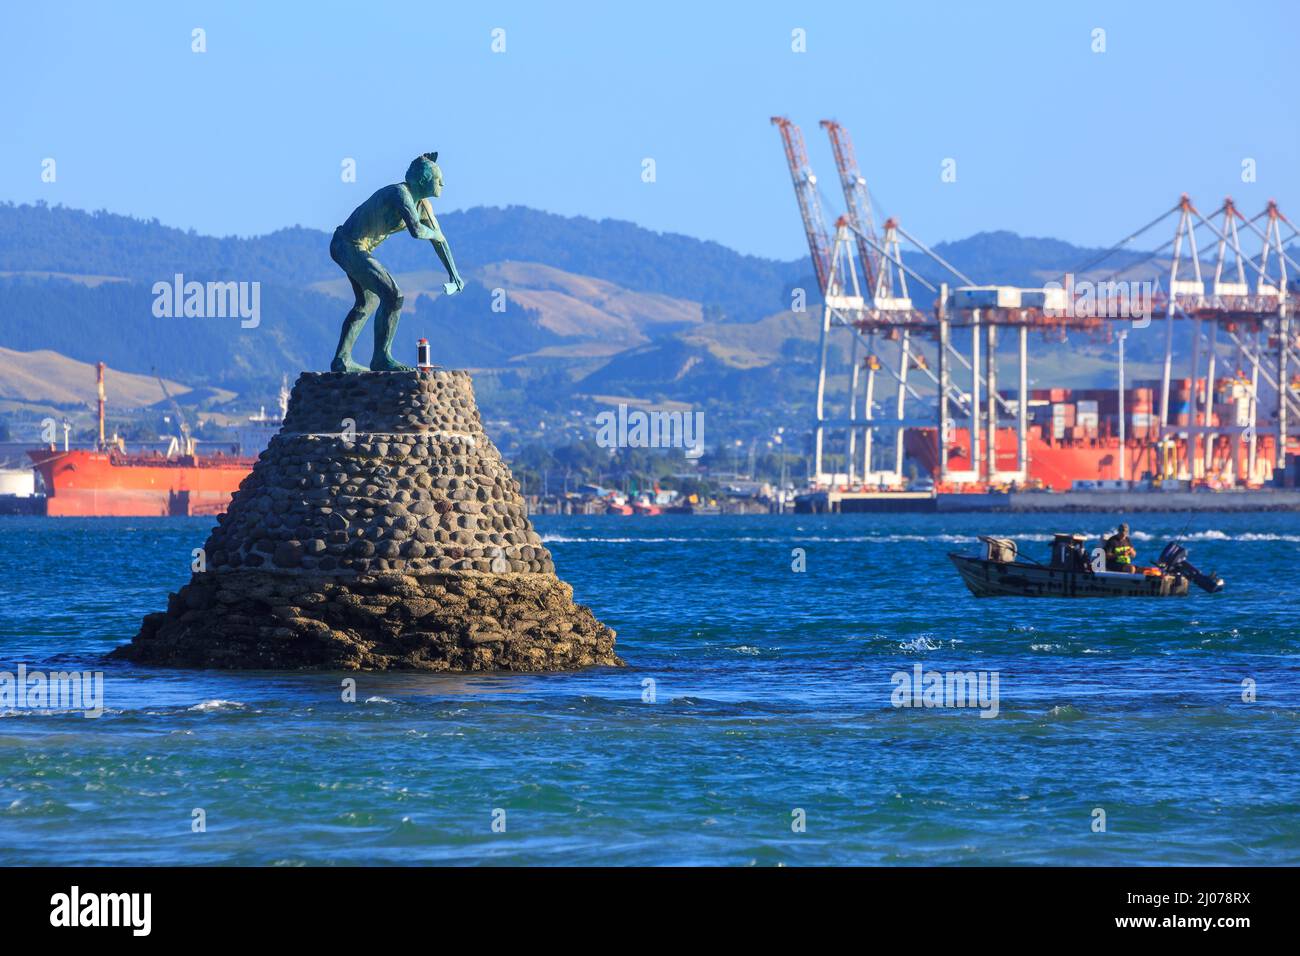 Une statue de Tangaroa, le dieu maori de la mer, dans le port de Tauranga, en Nouvelle-Zélande. En arrière-plan sont les grues du port de Tauranga Banque D'Images